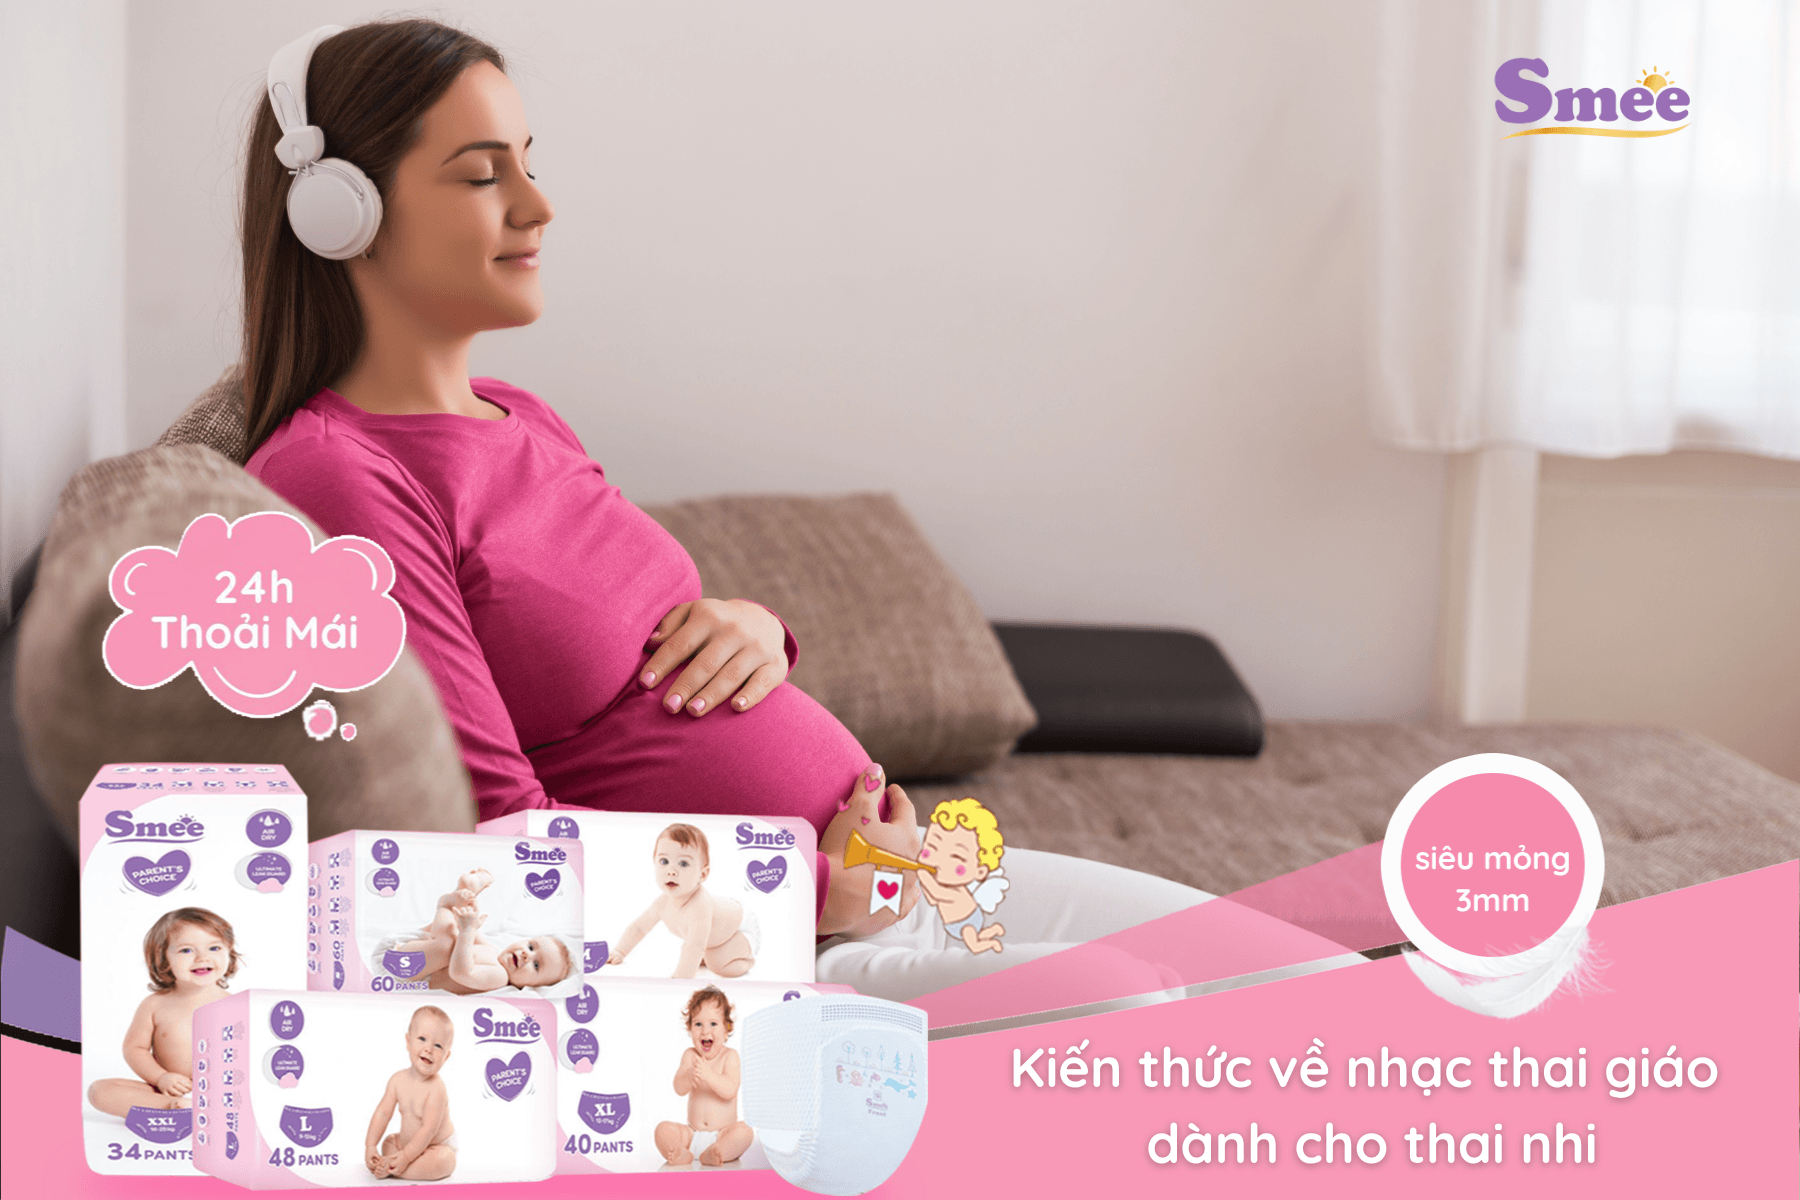 Cho thai nhi nghe nhạc vào lúc bé thức hoặc lúc mẹ thư giãn